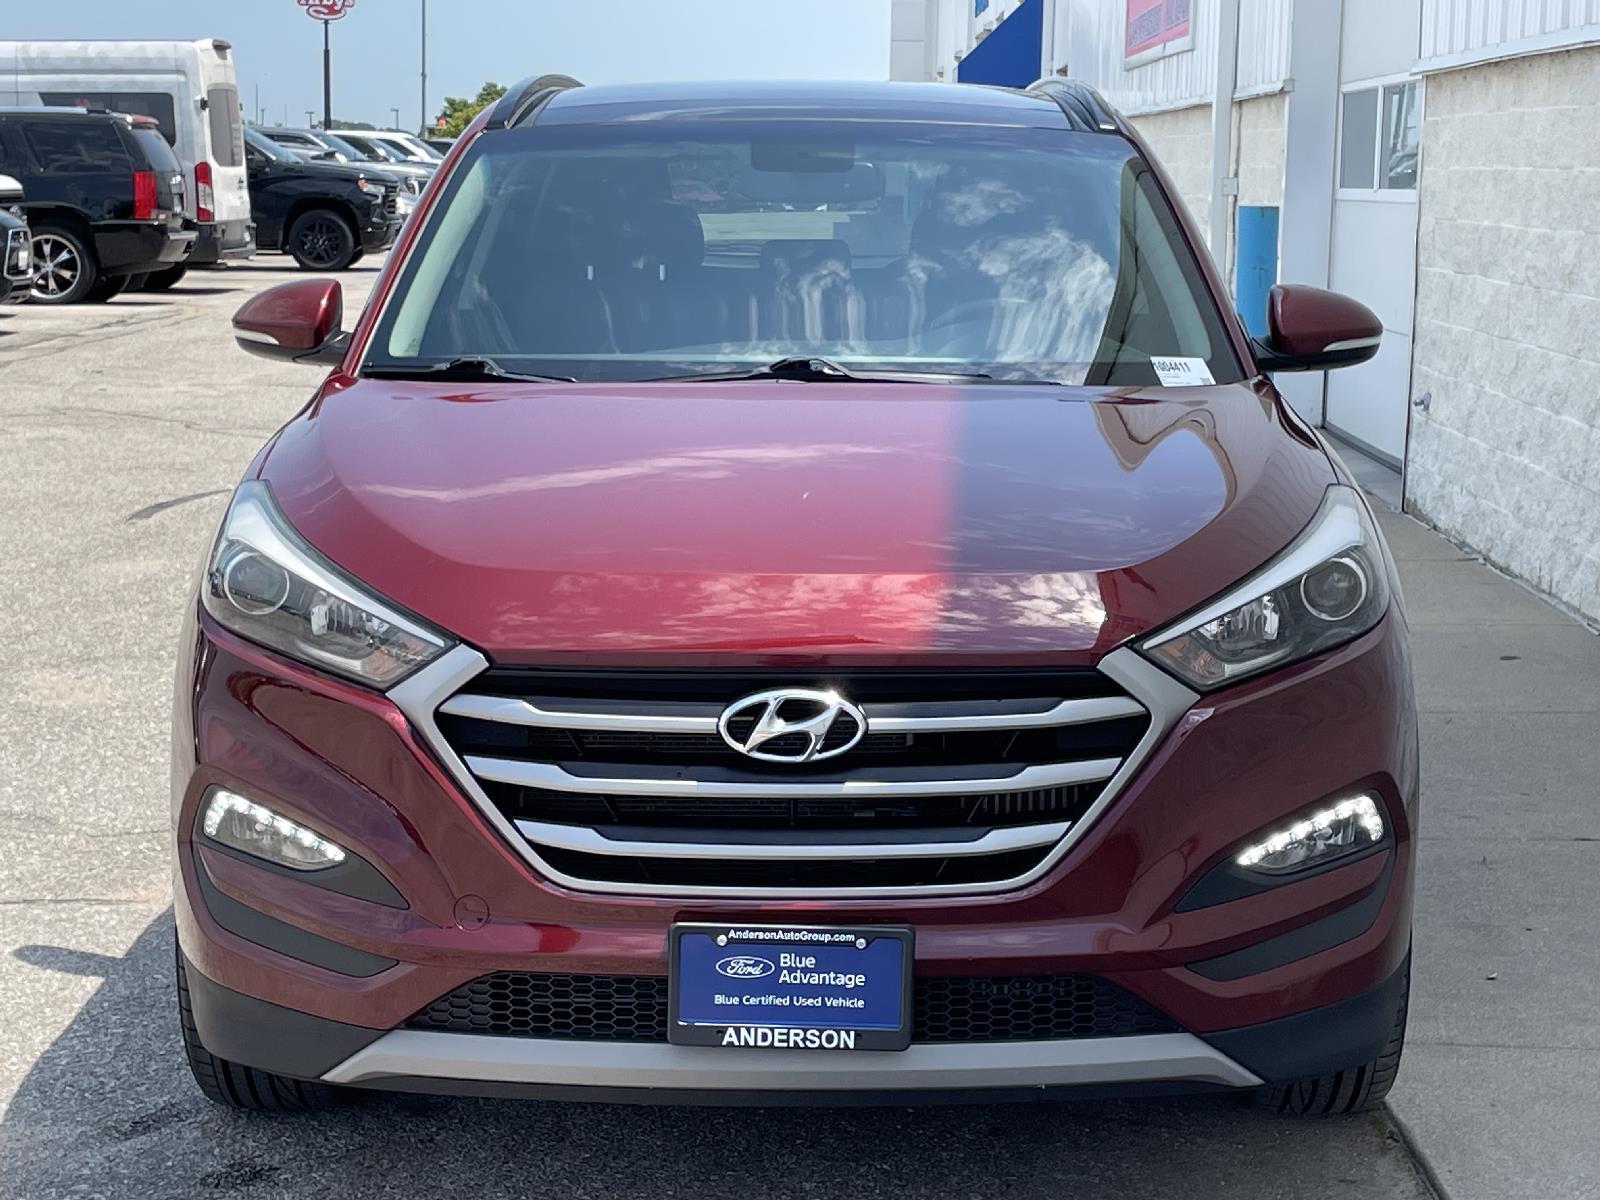 Used 2018 Hyundai Tucson Value SUV for sale in Lincoln NE